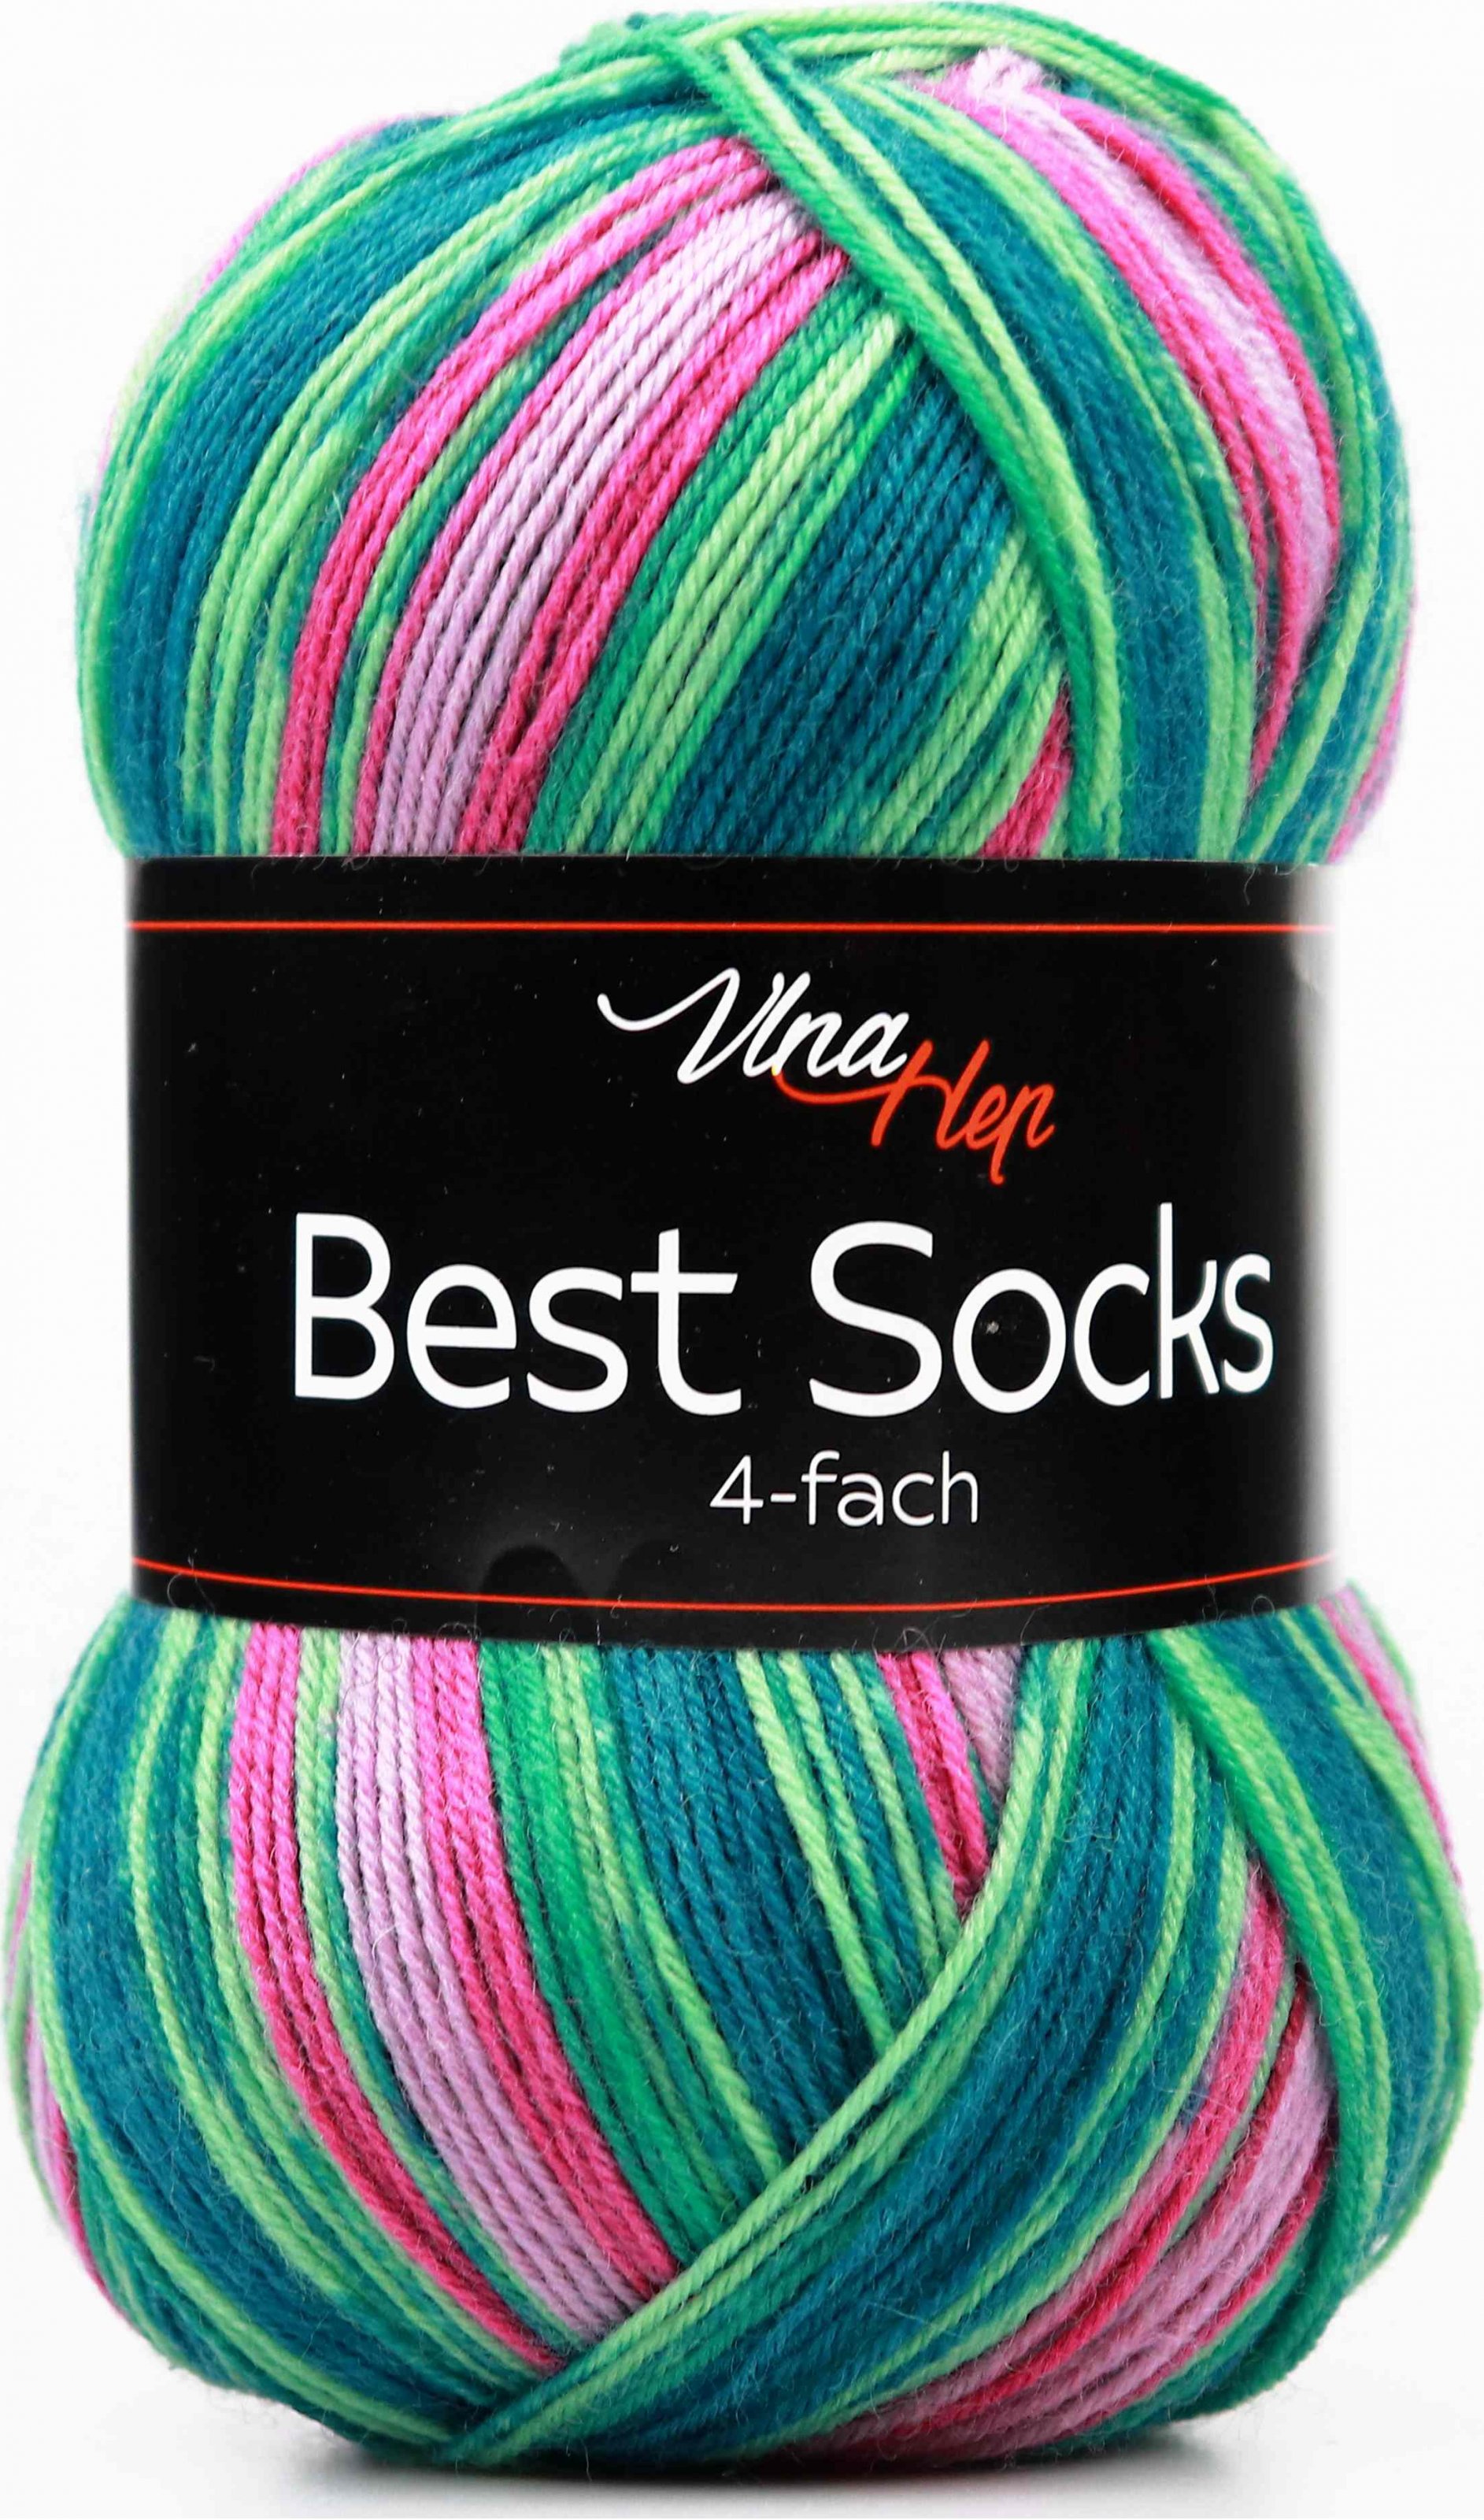 92 Recenzí Vlna-Hep Best Socks 4-fach 